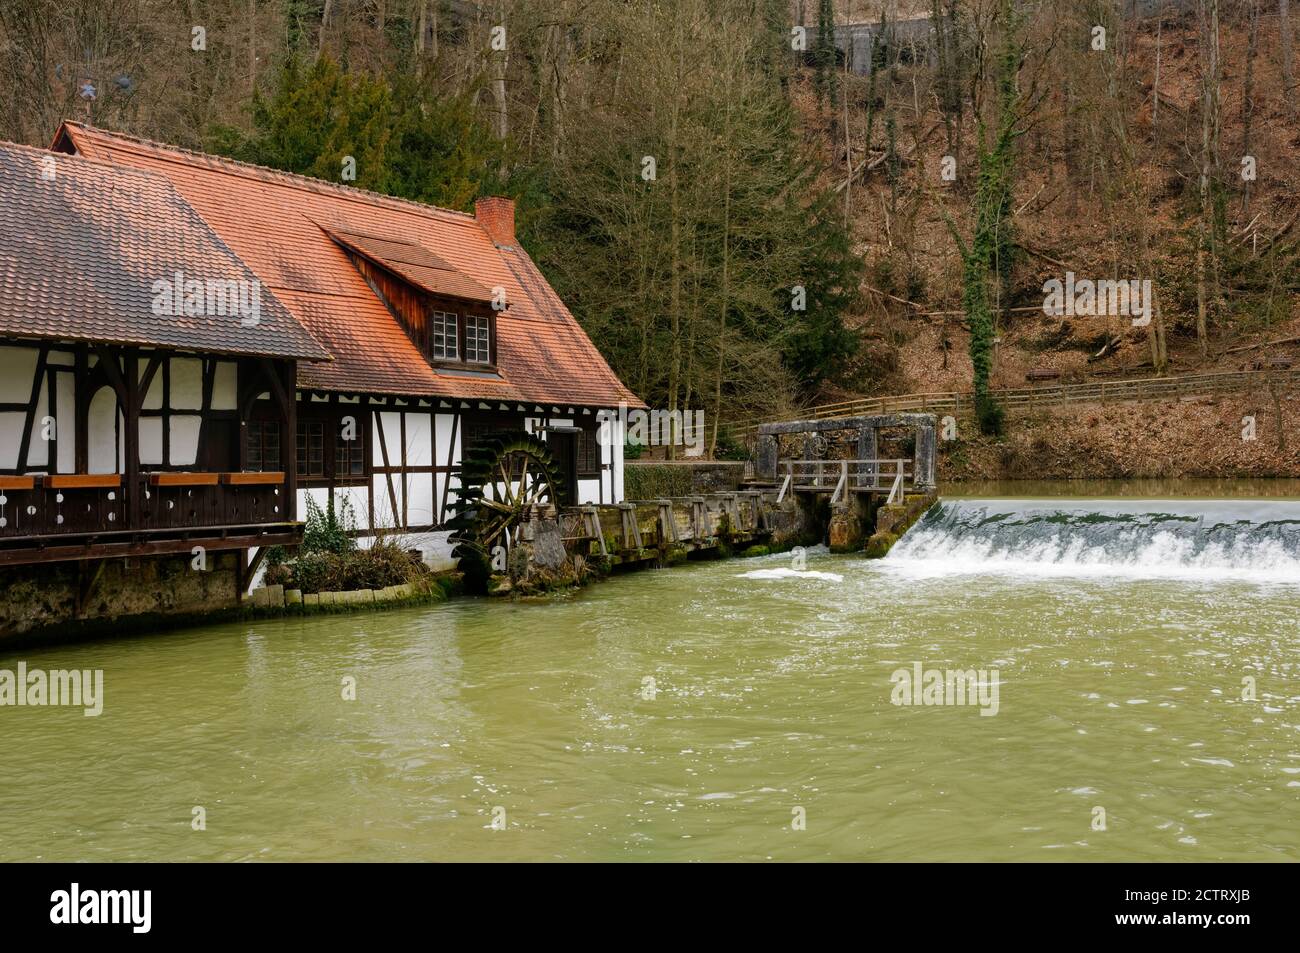 Blaubeuren : moulin à marteau historique au Blatopf, district d'Alb-Donau, Bade-Wurtemberg, Allemagne Banque D'Images